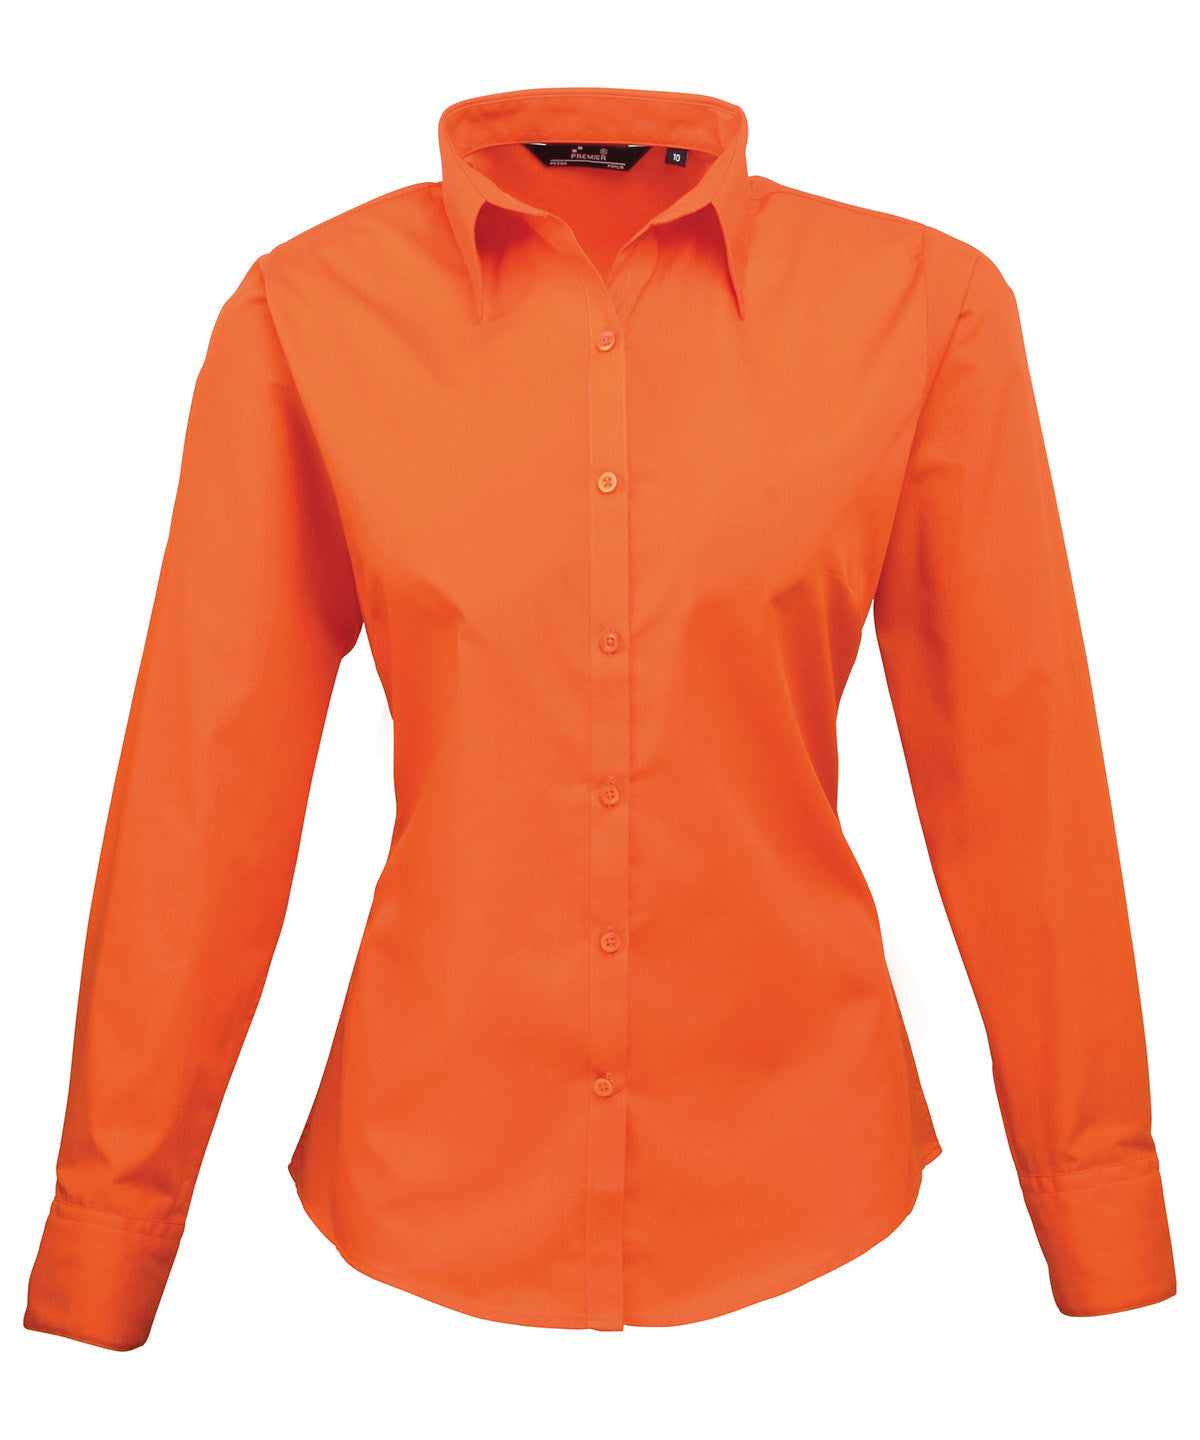 Premier Women's poplin long sleeve blouse Orange